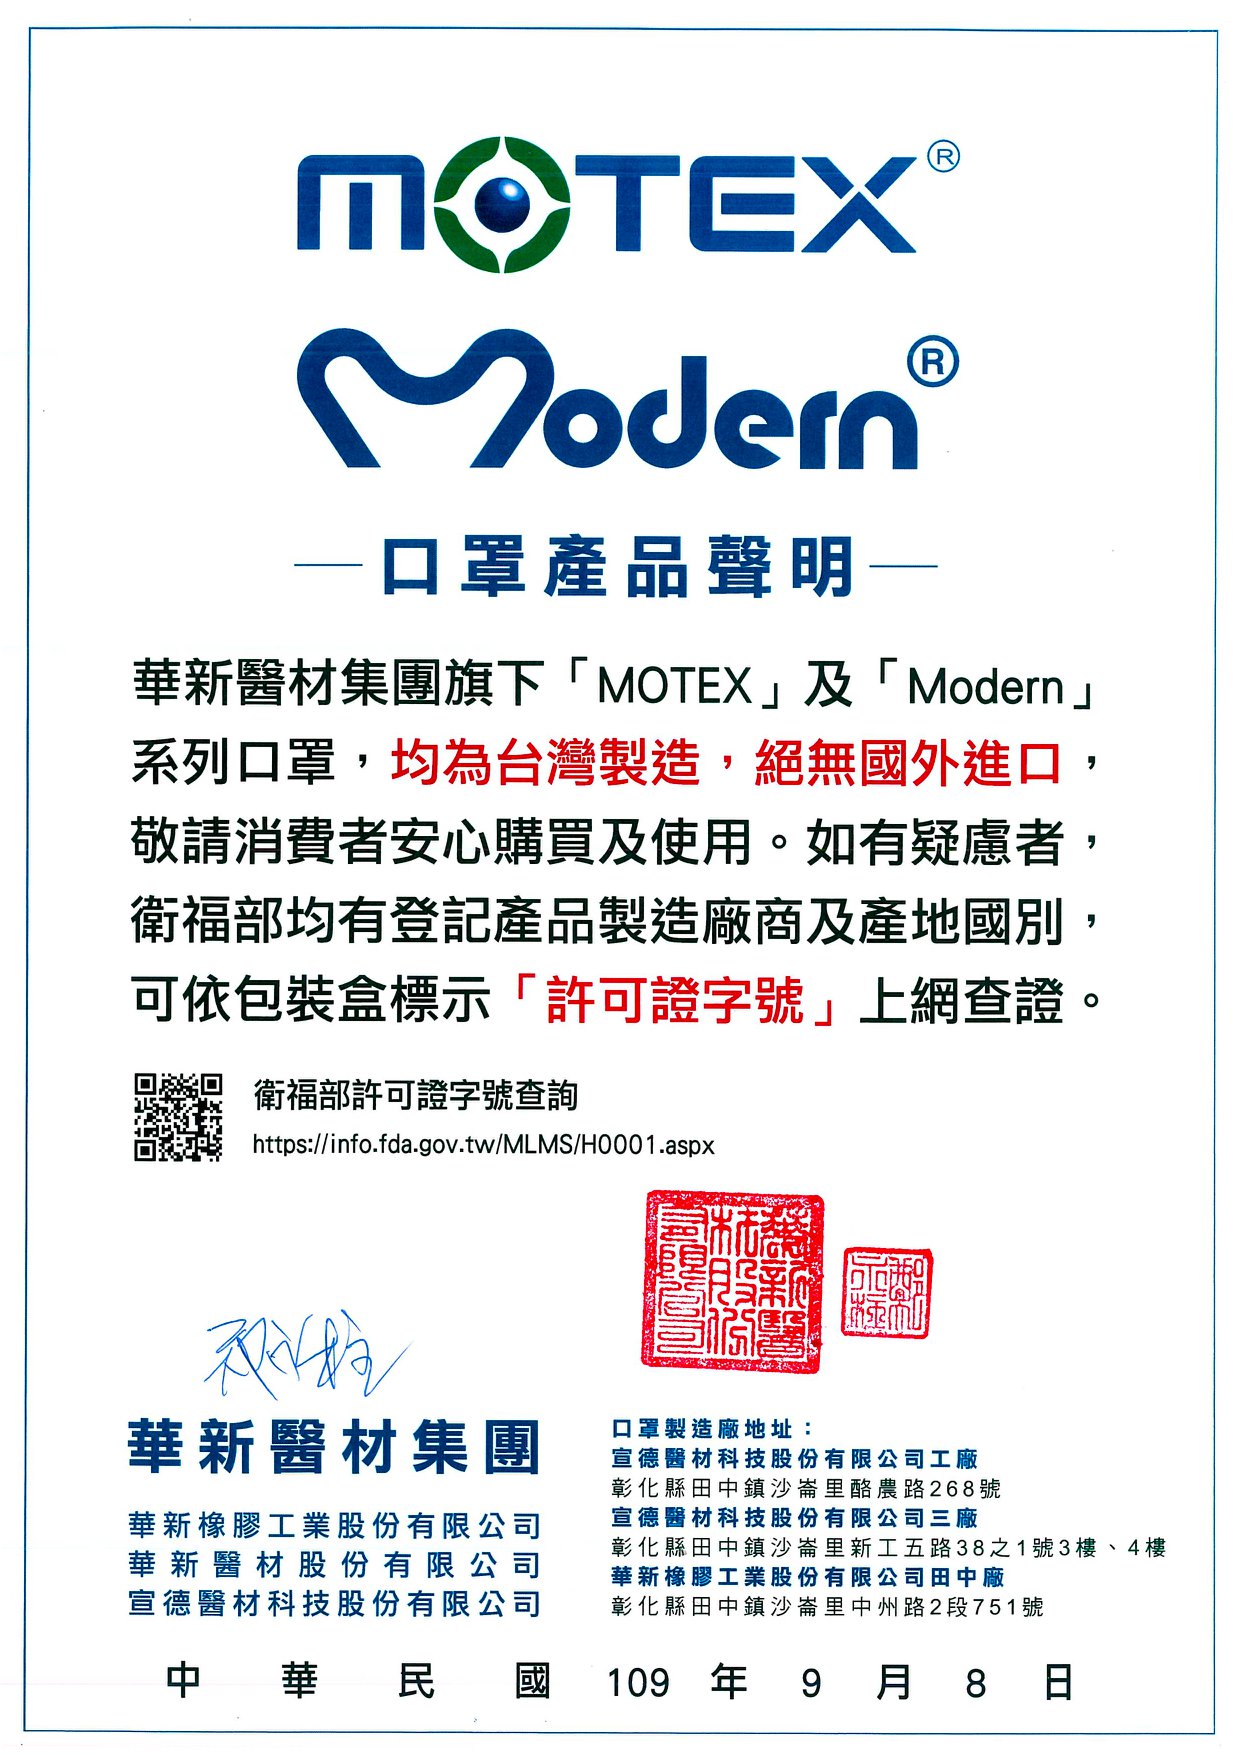 「MOTEX」及「Modern」系列口罩均為台灣製造